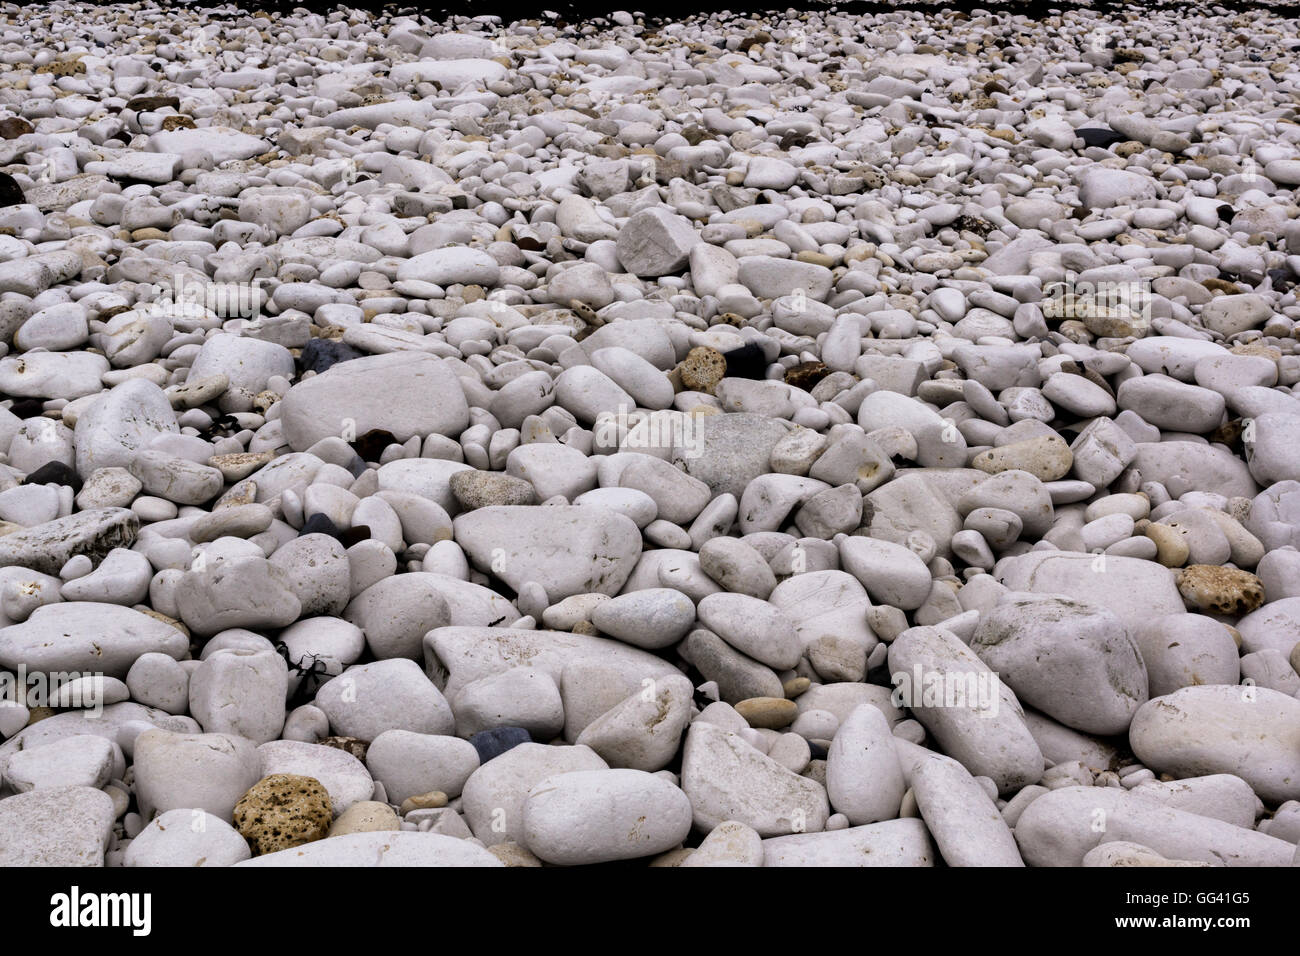 White stones on beach Stock Photo